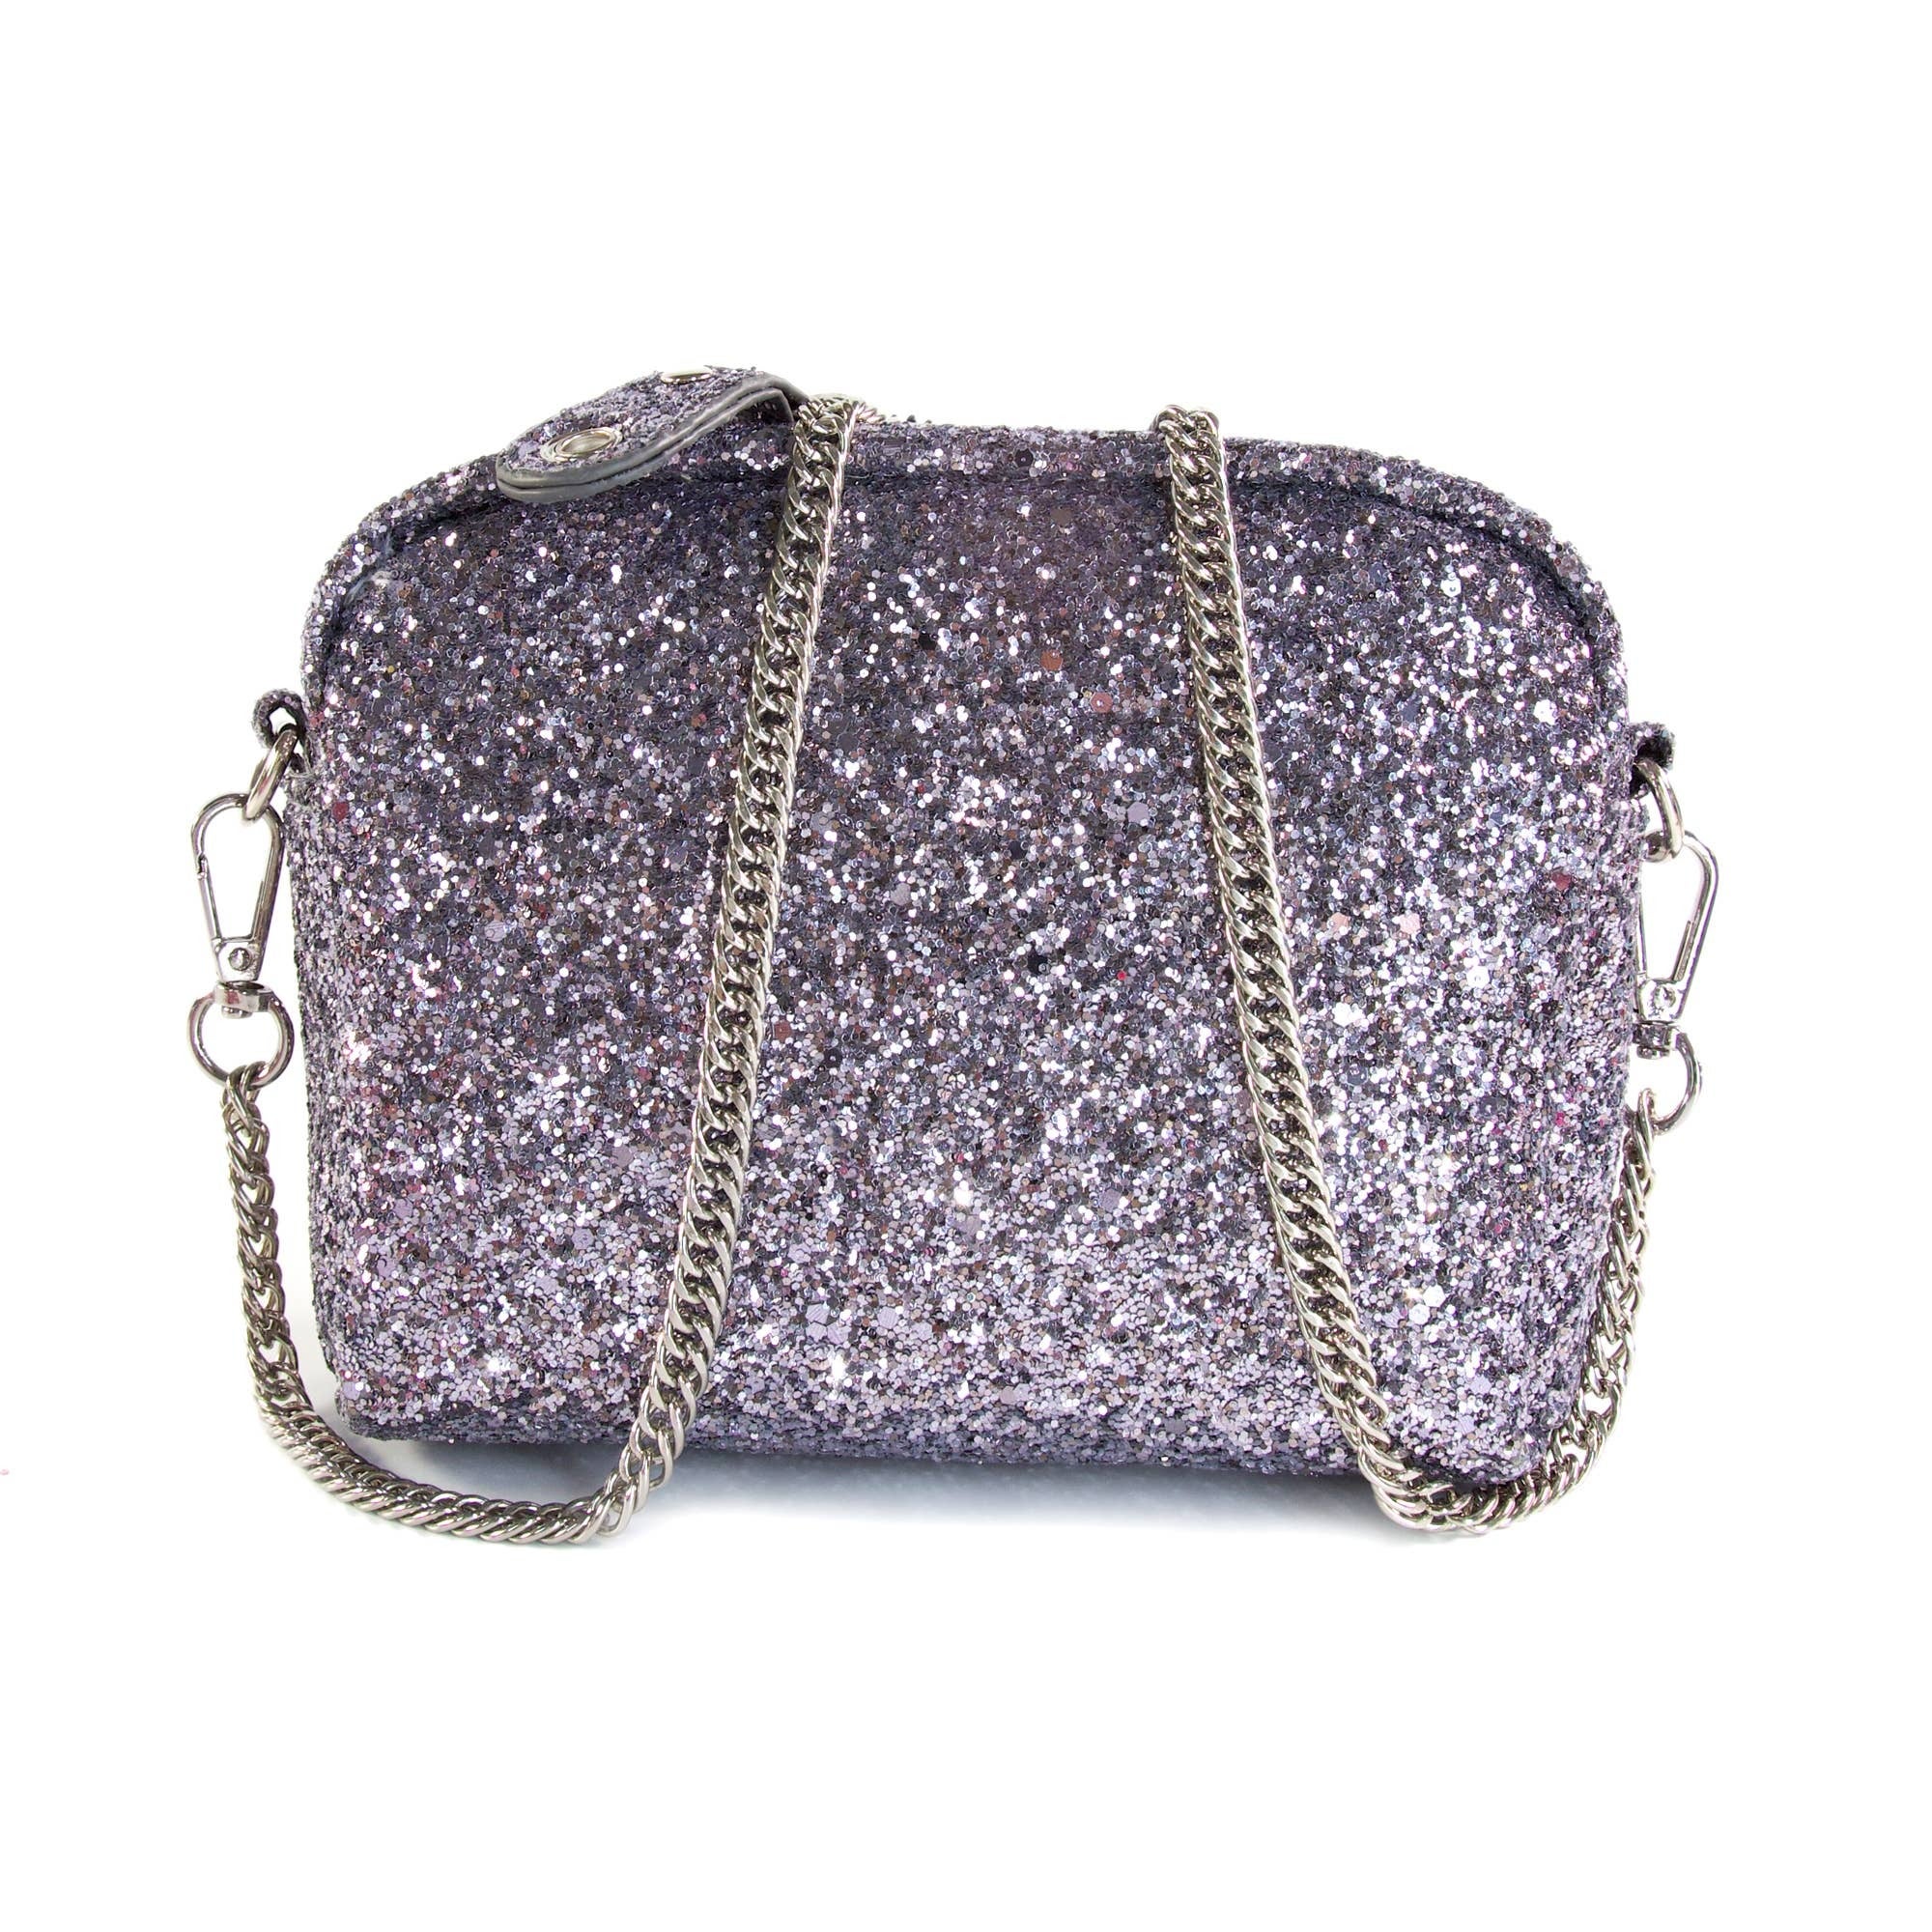 Buy Silver Handbags for Women by Aldo Online | Ajio.com